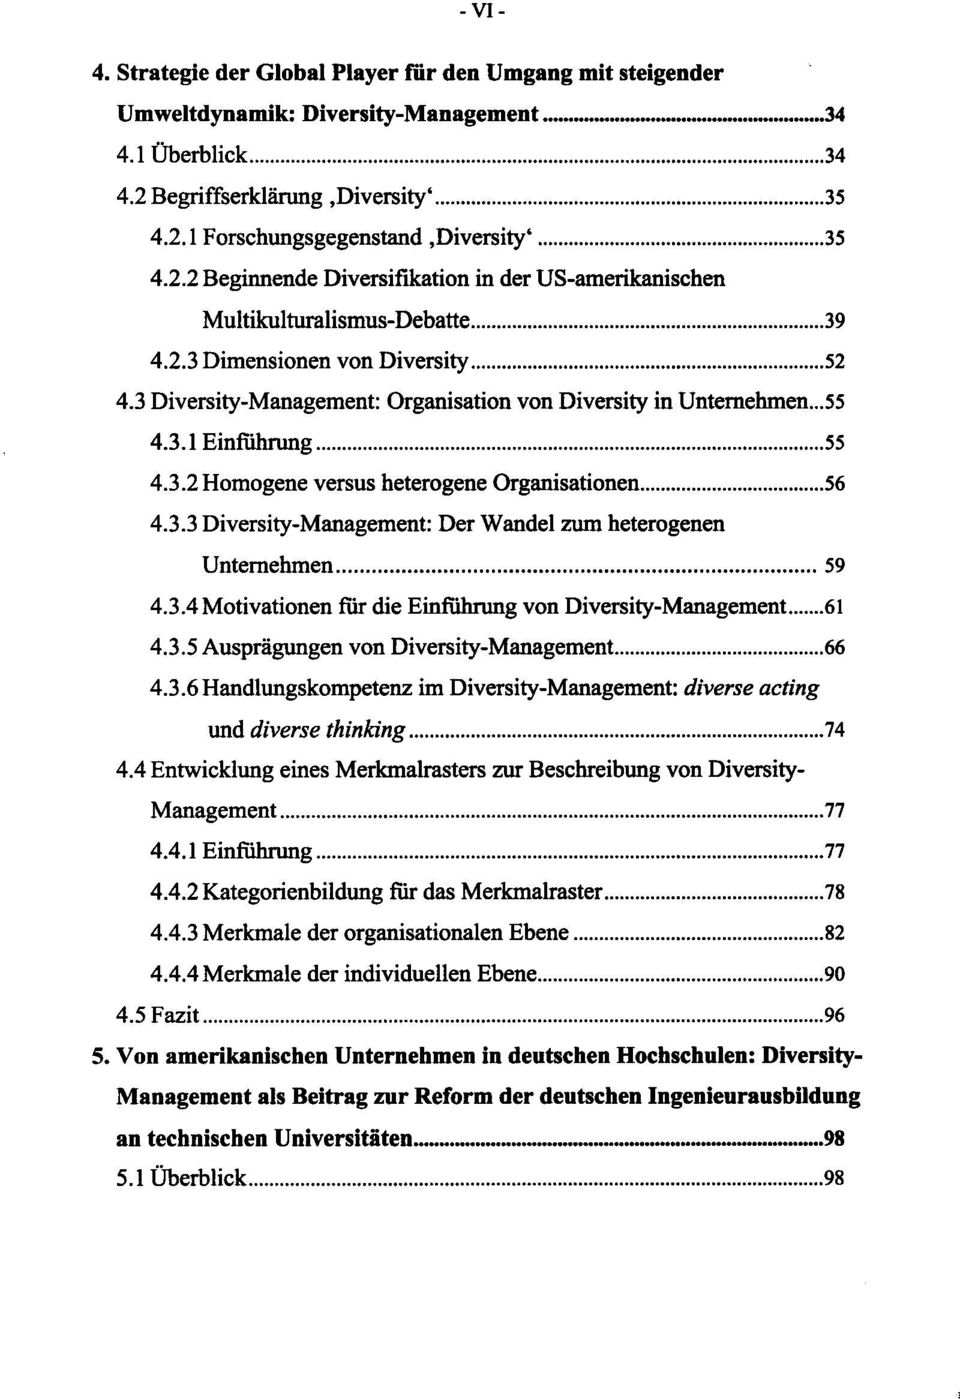 3.2Homogene versus heterogene Organisationen 56 4.3.3 Diversity-Management: Der Wandel zum heterogenen Unternehmen 59 4.3.4Motivationen für die Einführung von Diversity-Management 61 4.3.5 Ausprägungen von Diversity-Management 66 4.